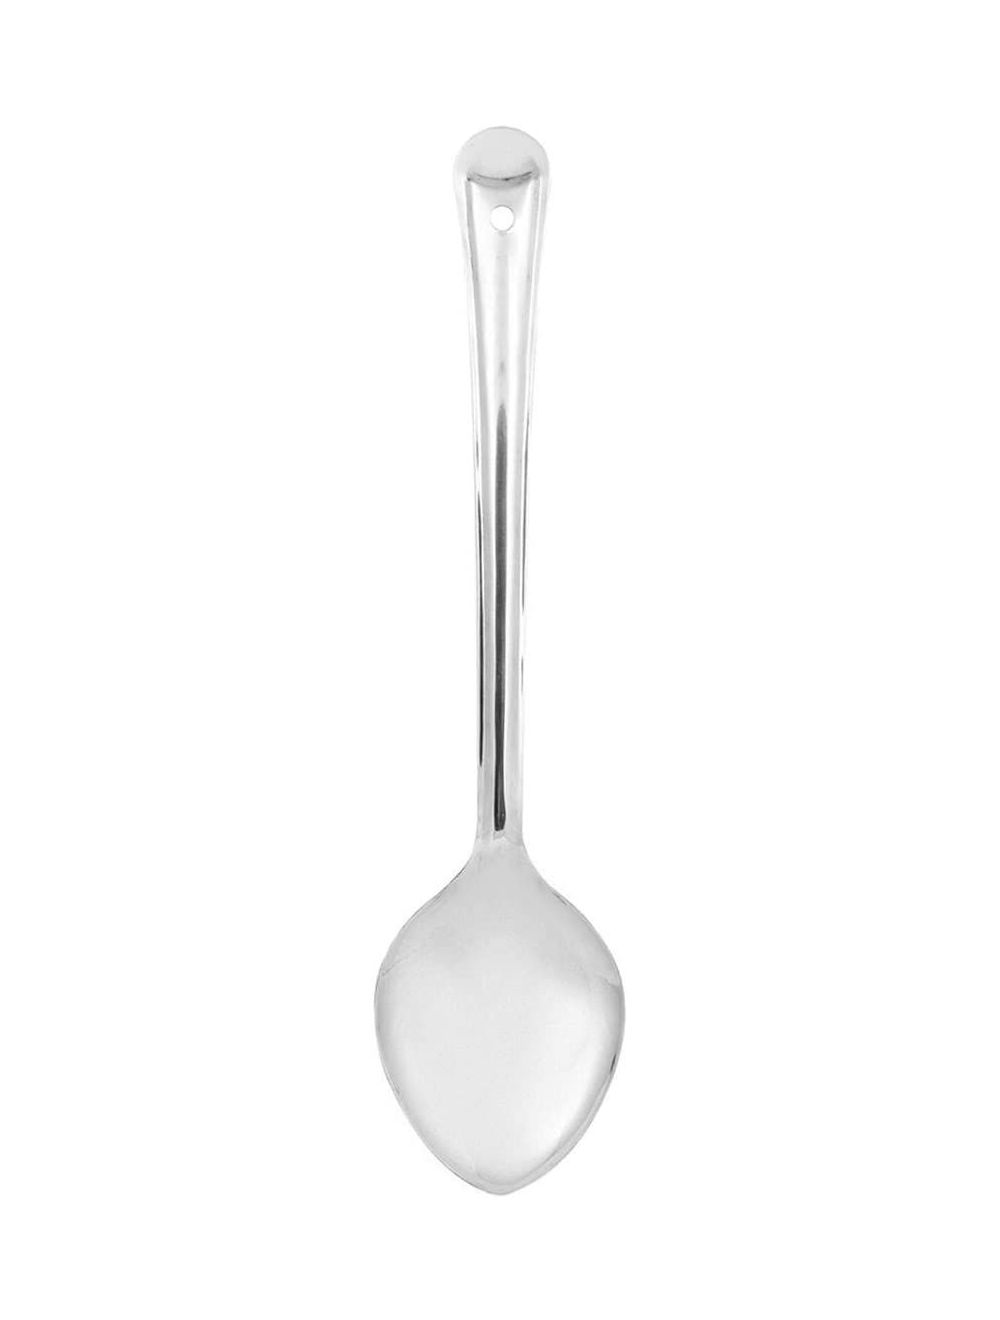 Raj 5 cm Basting Spoon-BS0001, Silver